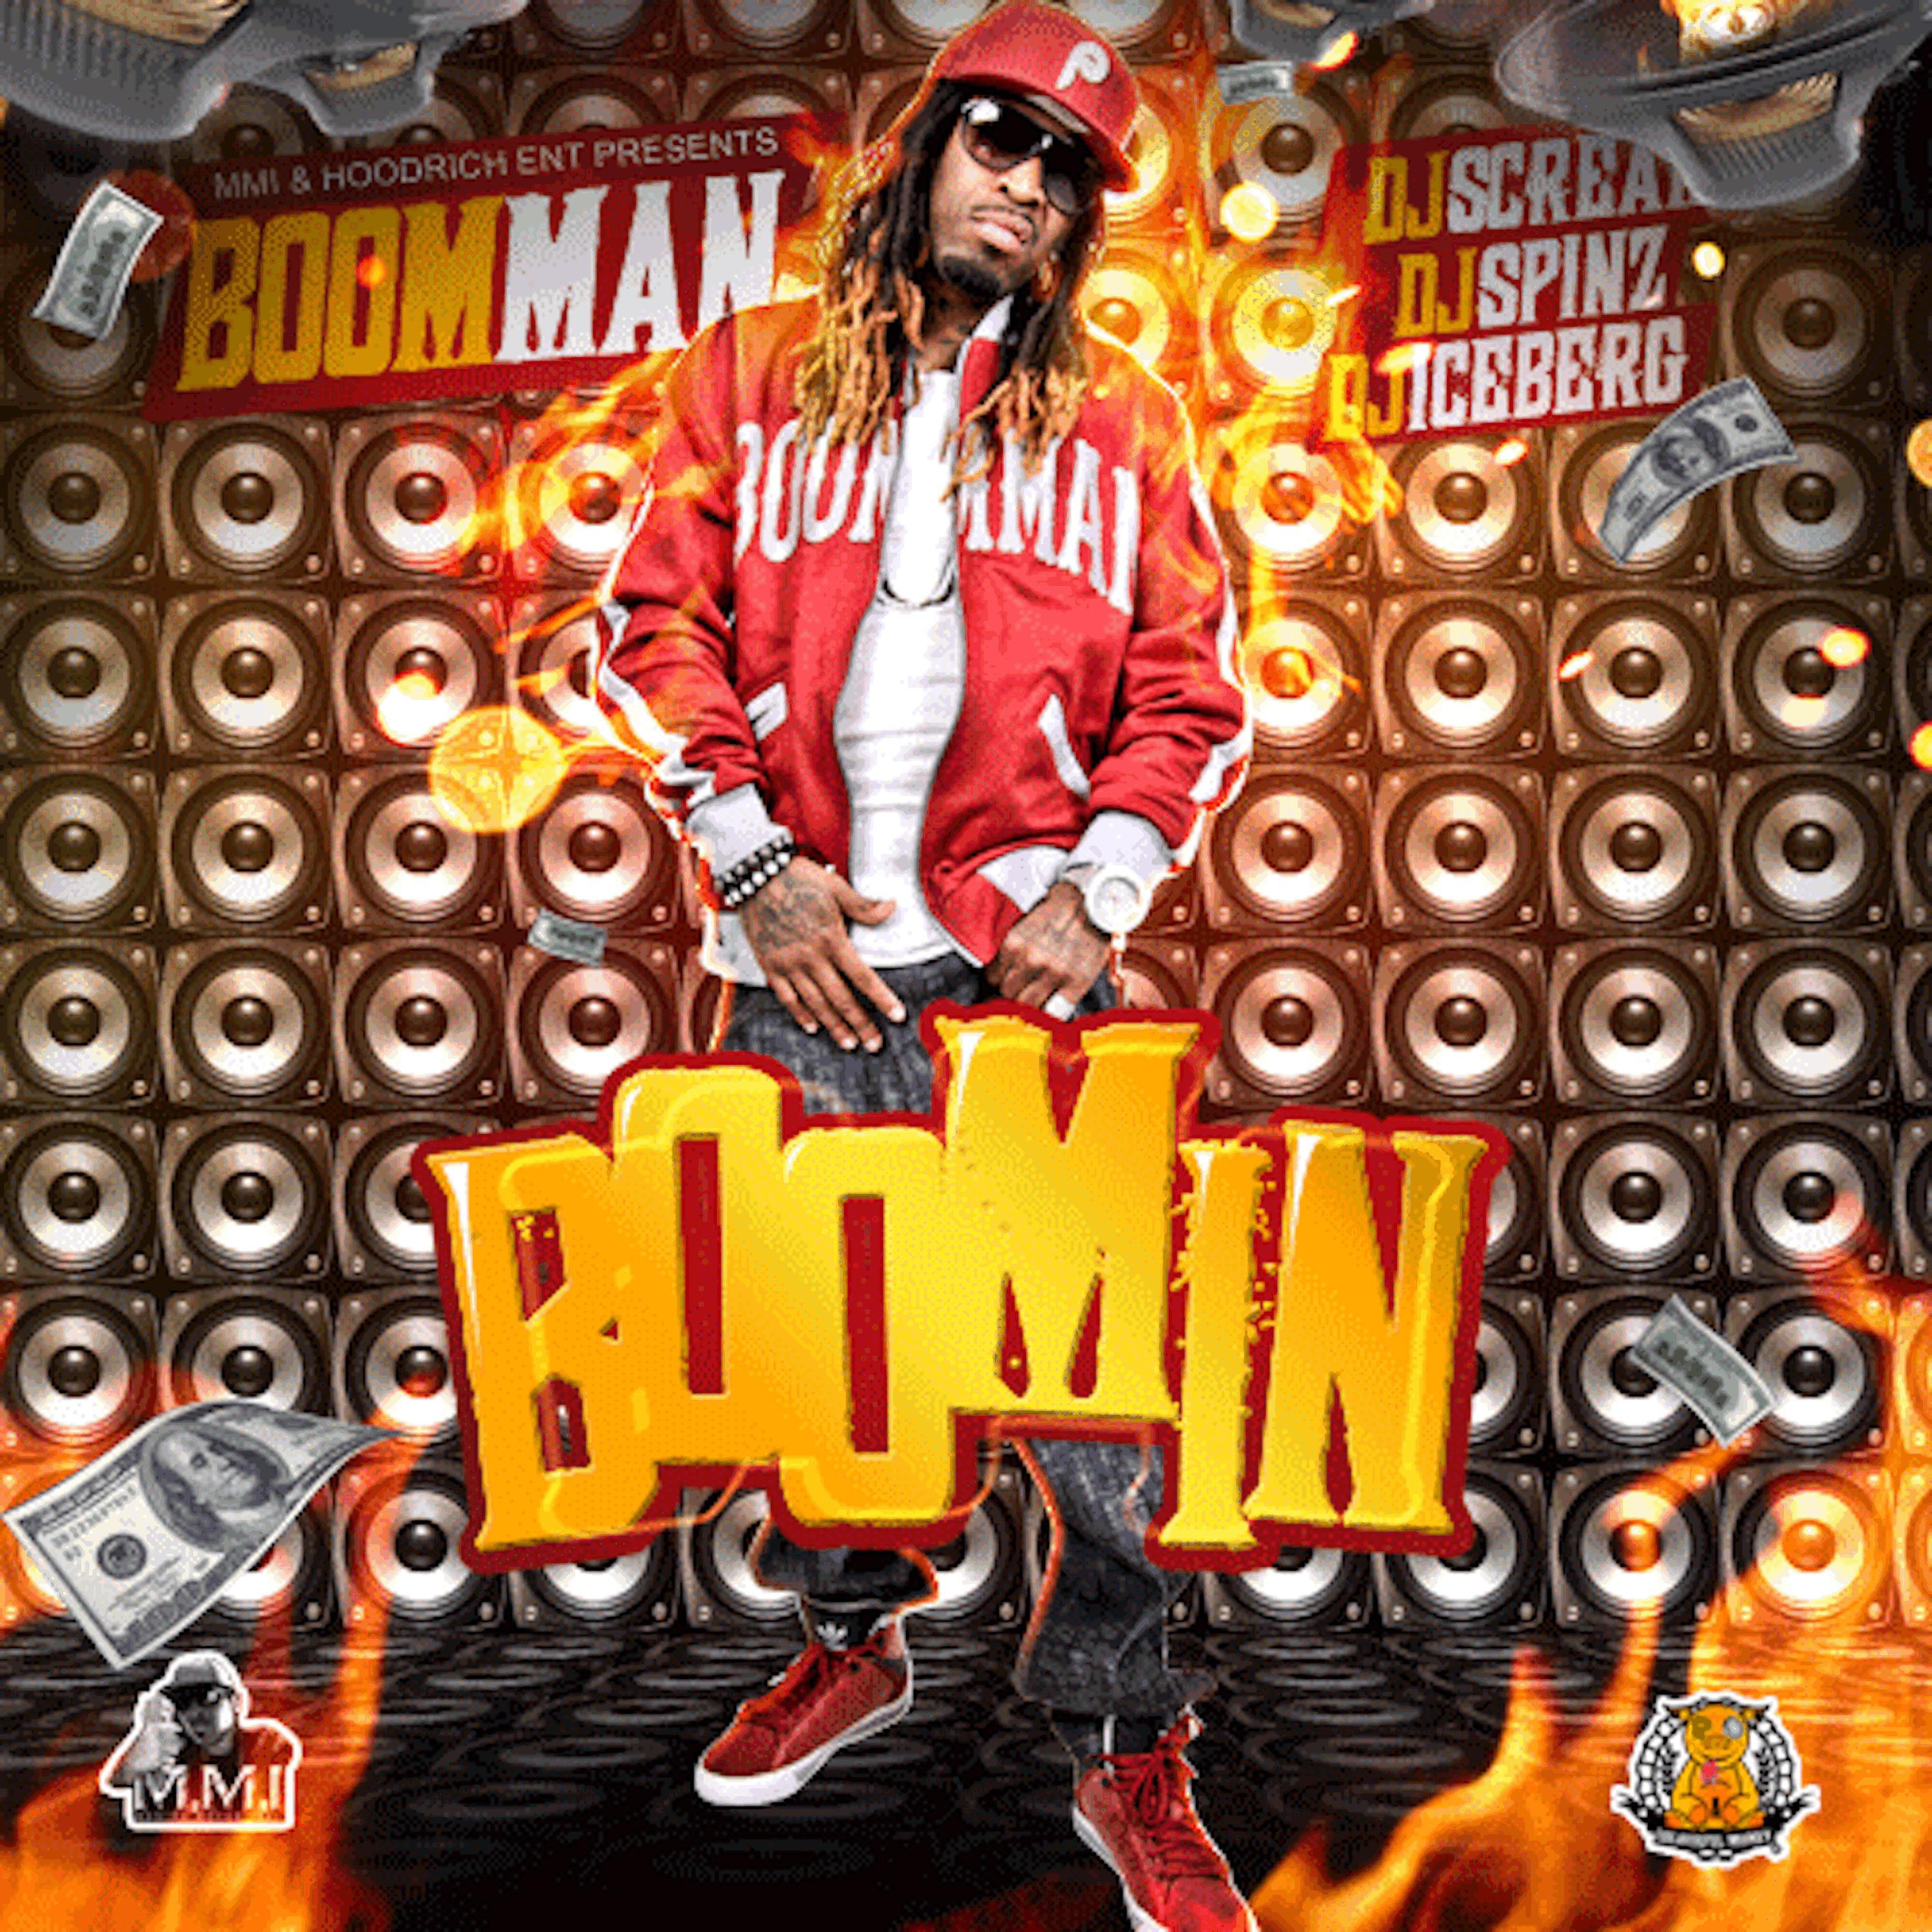 Boomman - Puttin' On